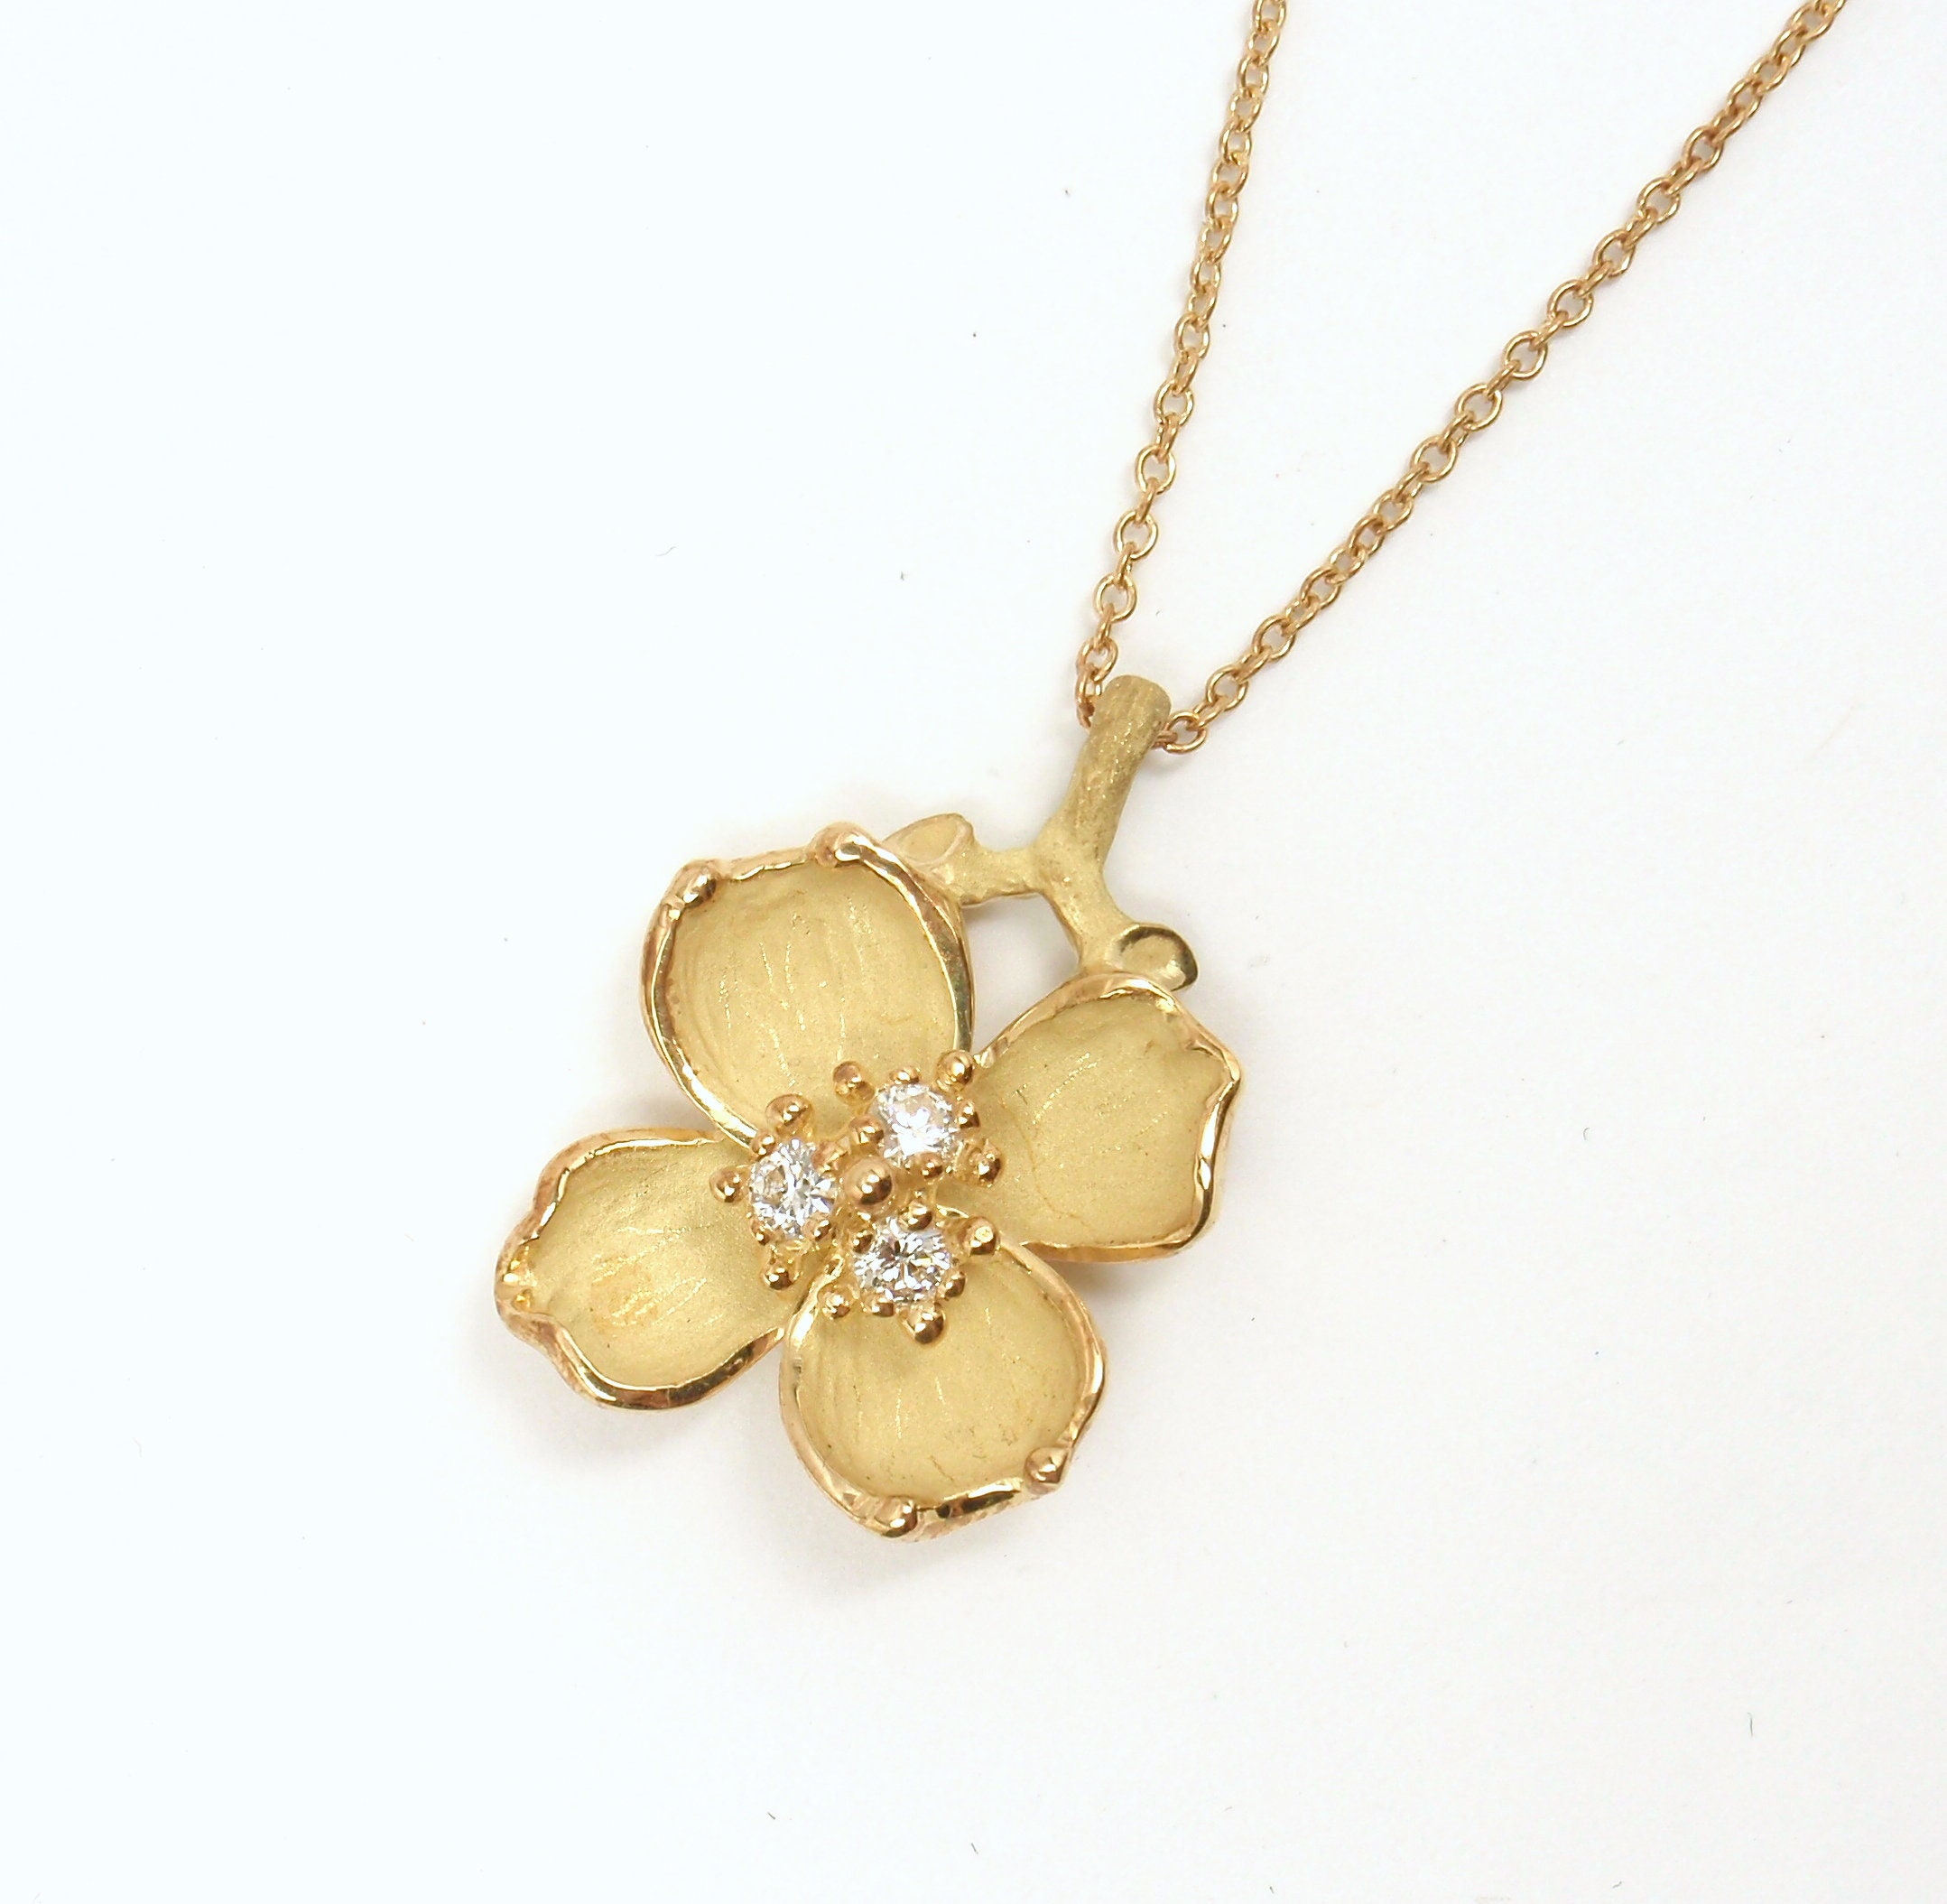 Tiffany & Co” Diamond Bar Long Necklace —